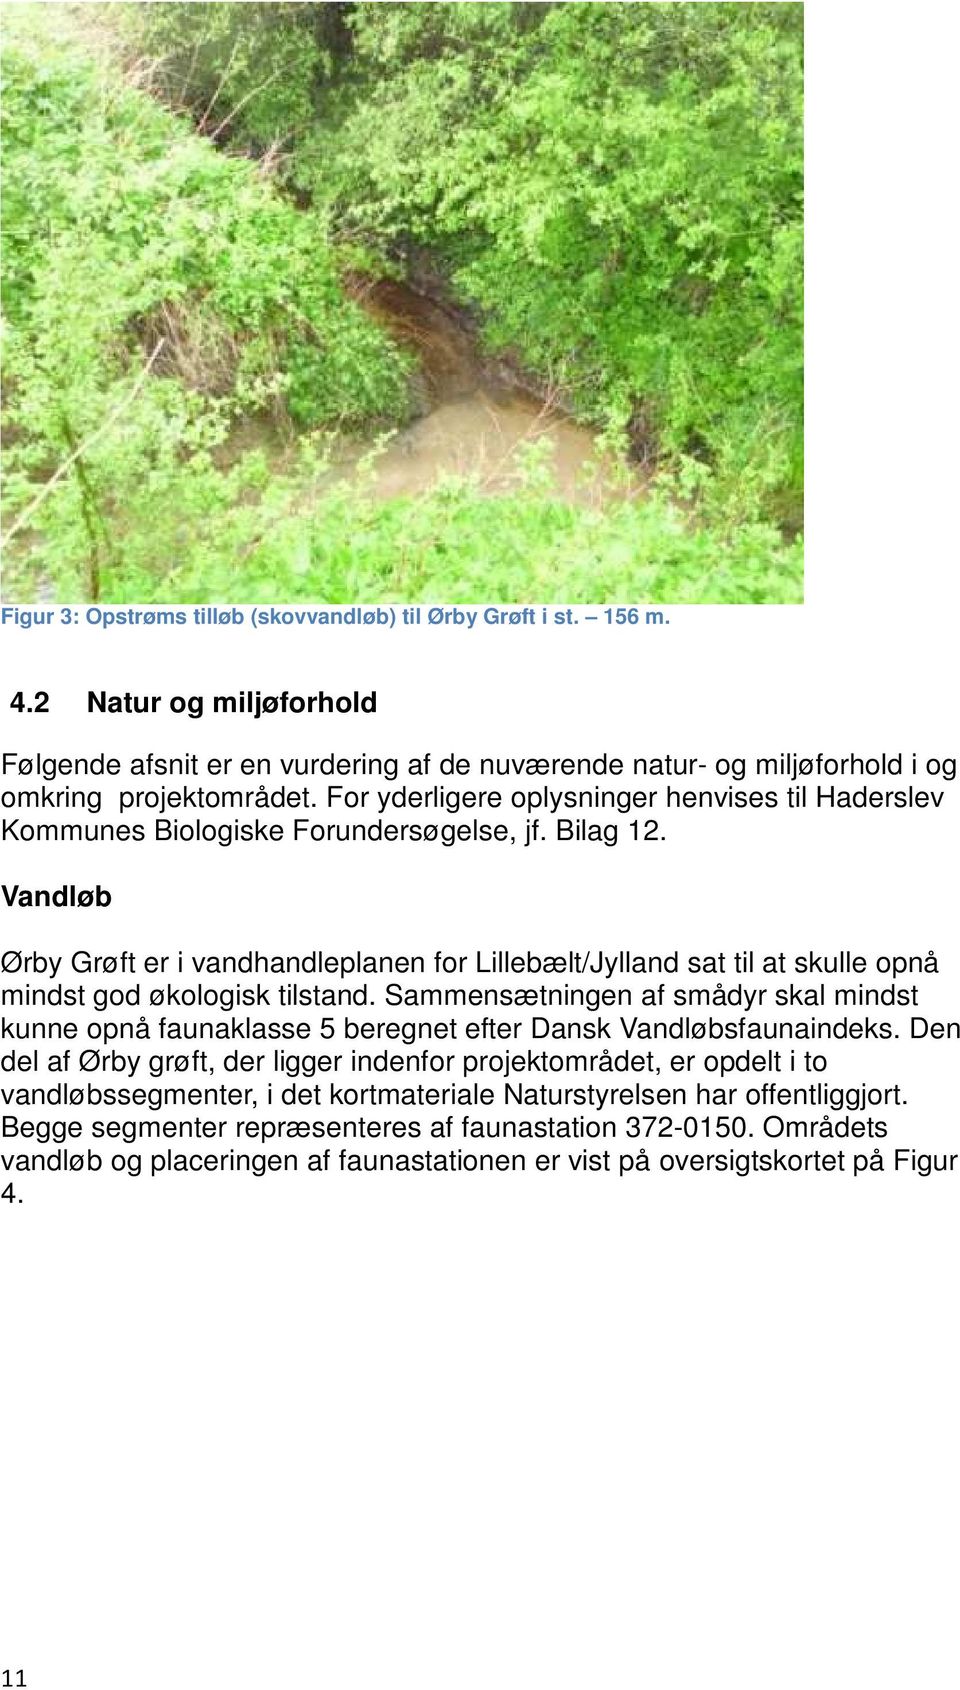 Vandløb Ørby Grøft er i vandhandleplanen for Lillebælt/Jylland sat til at skulle opnå mindst god økologisk tilstand.